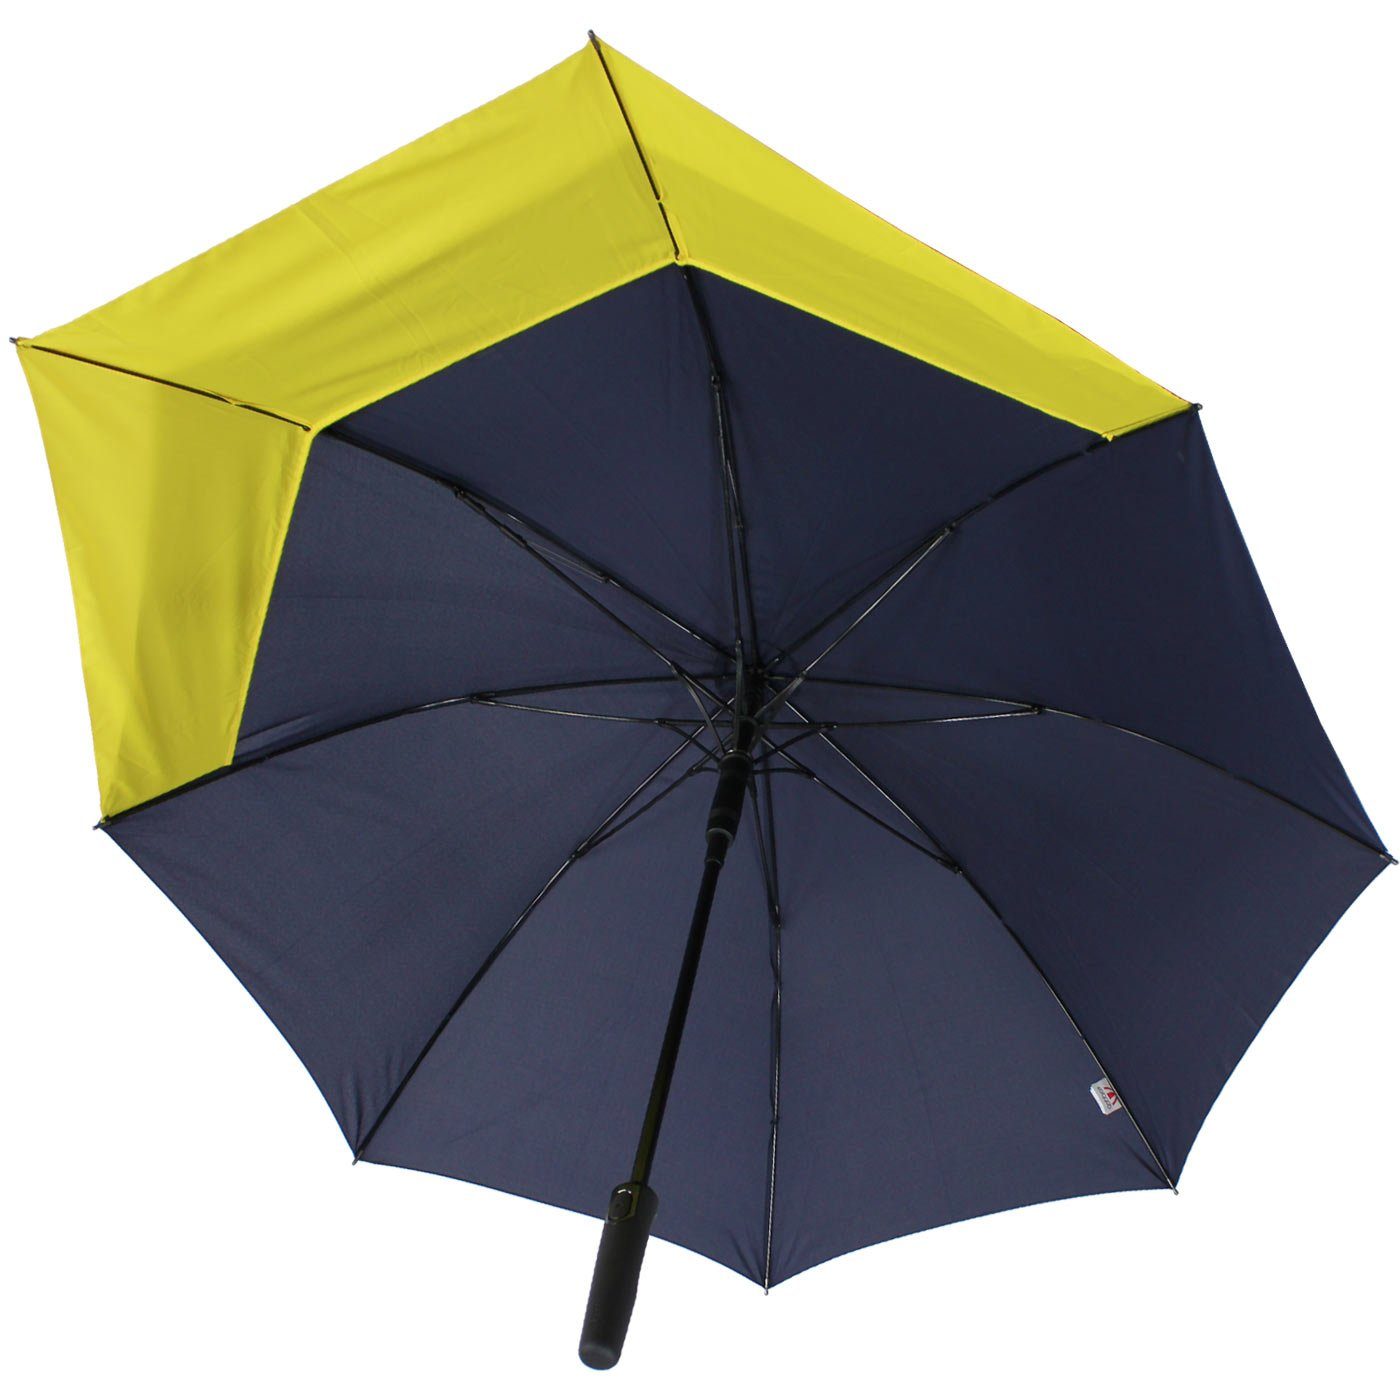 sich Schutz vergrößert mit doppler® beim Fiberglas vor Regen für Move to XL, Langregenschirm Öffnen mehr navyblau-gelb - Auf-Automatik